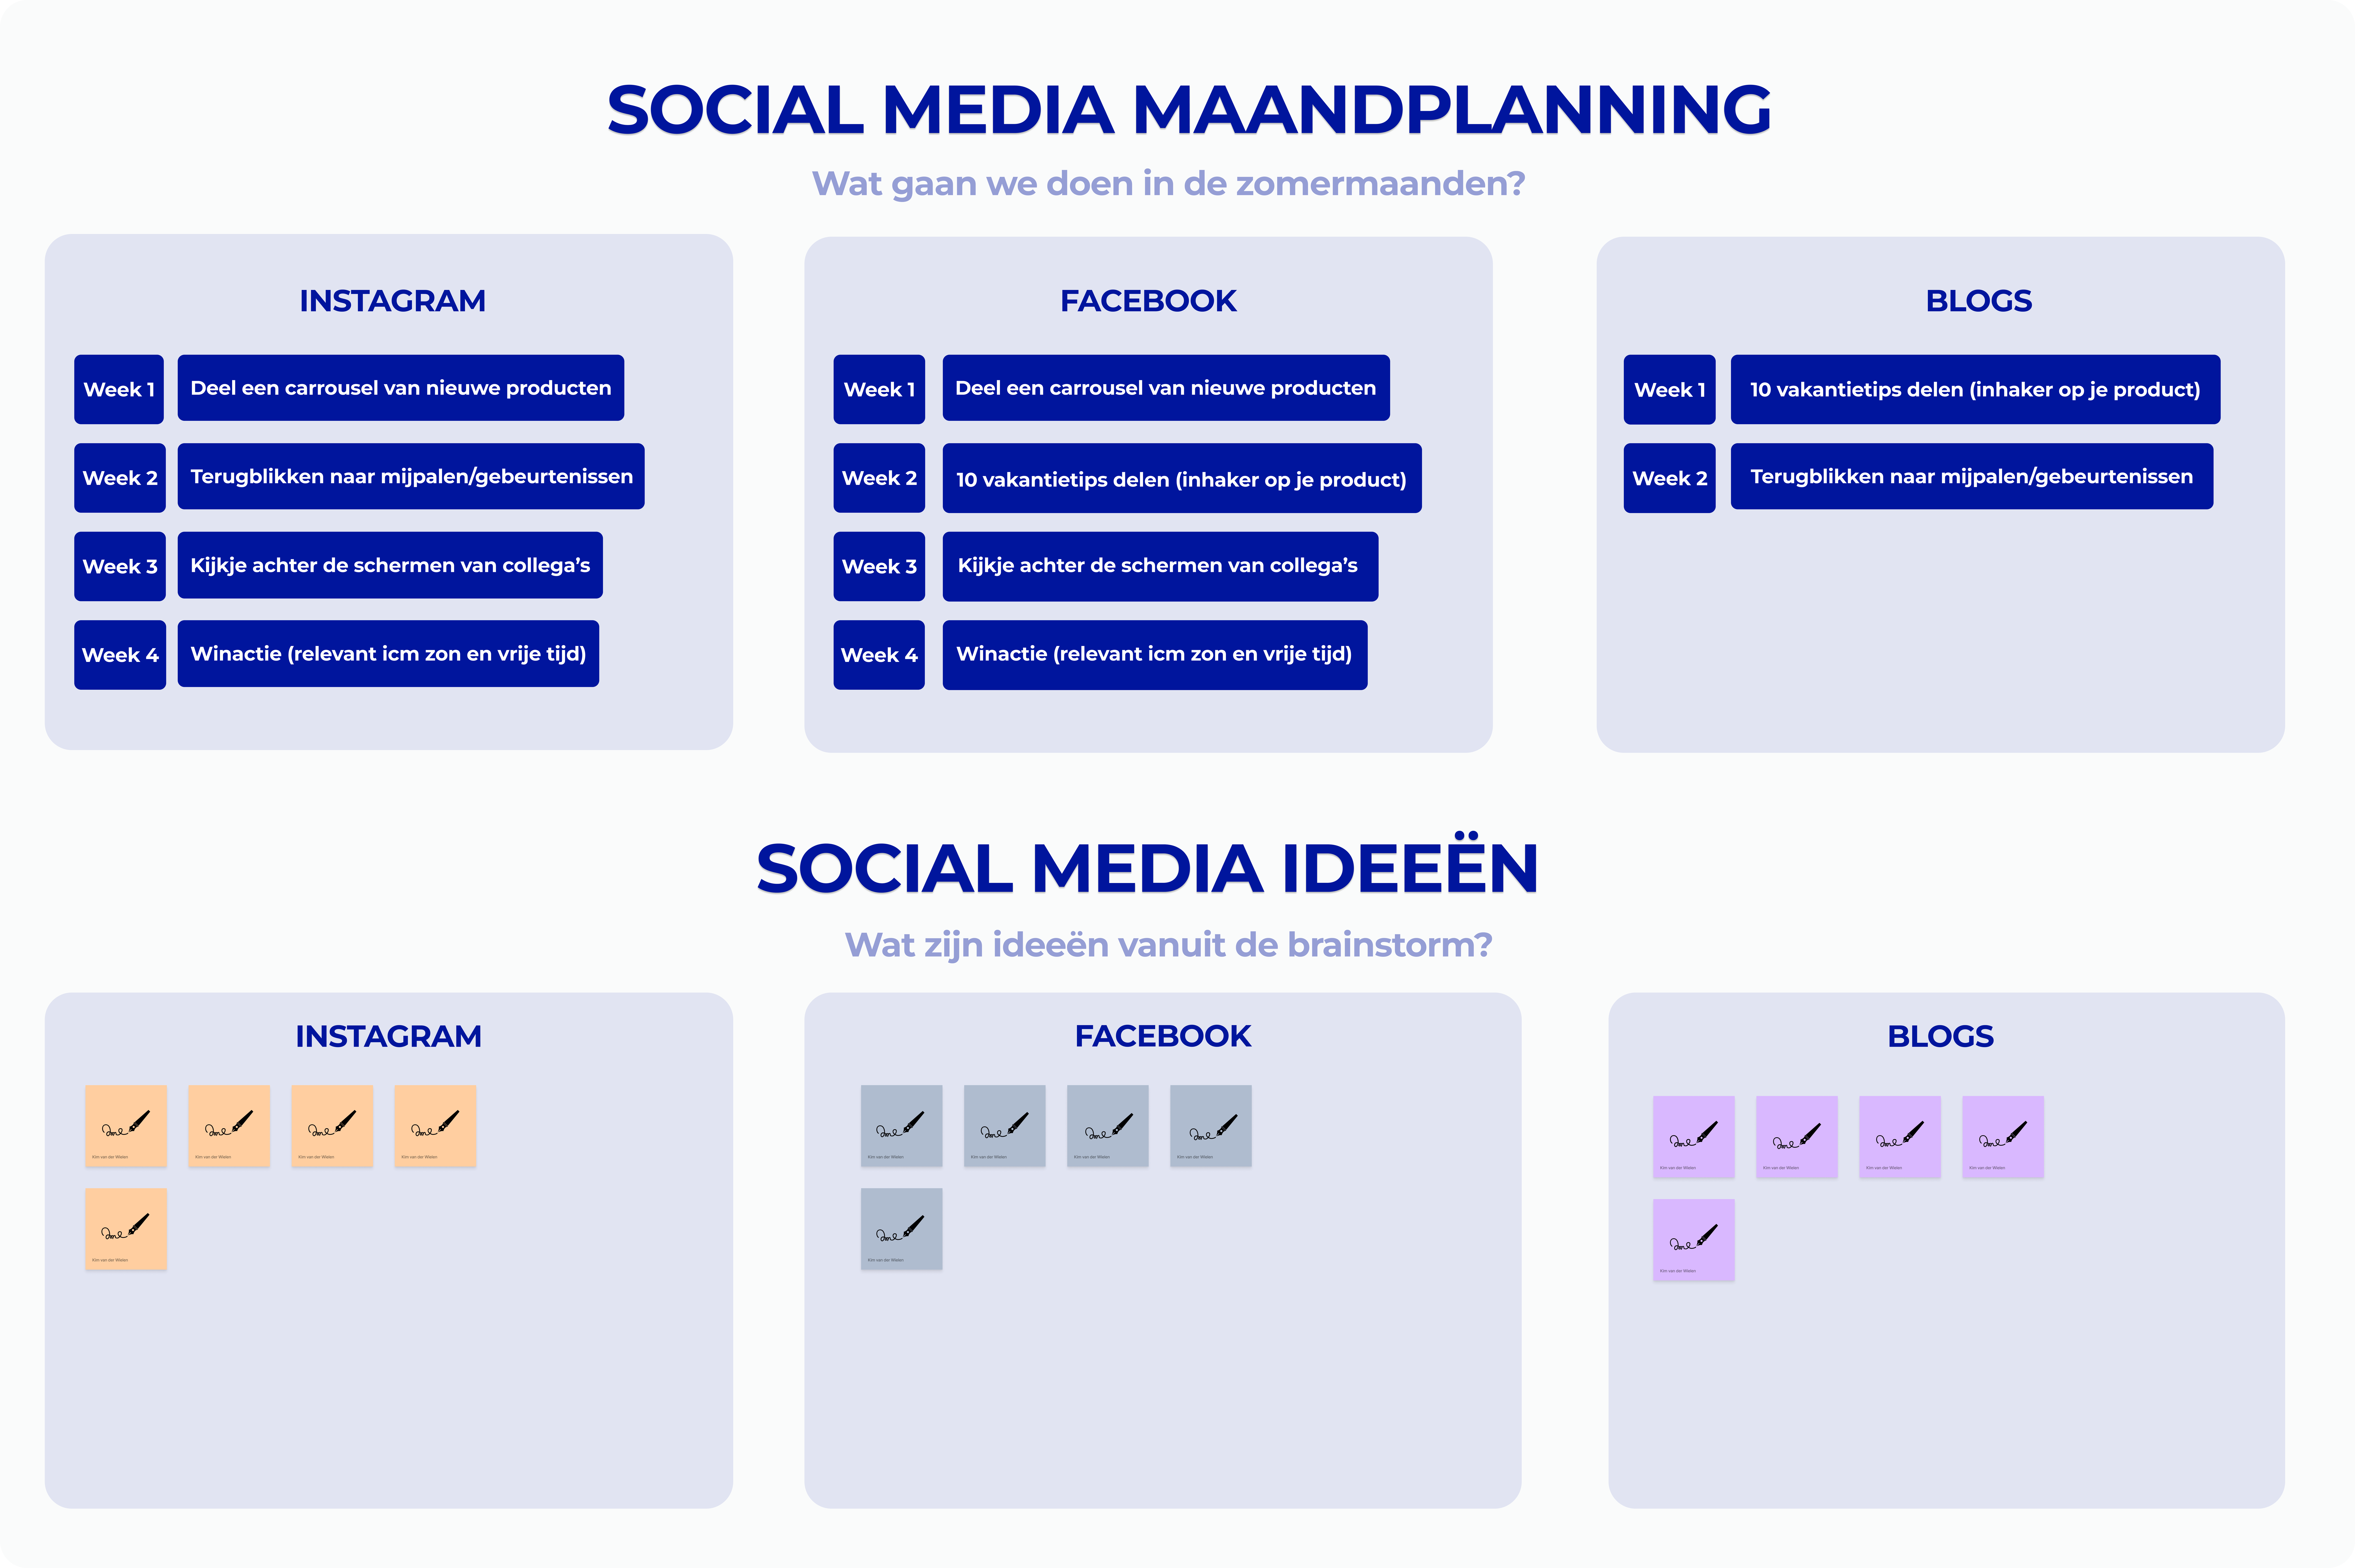 Social media maandplanning velocity